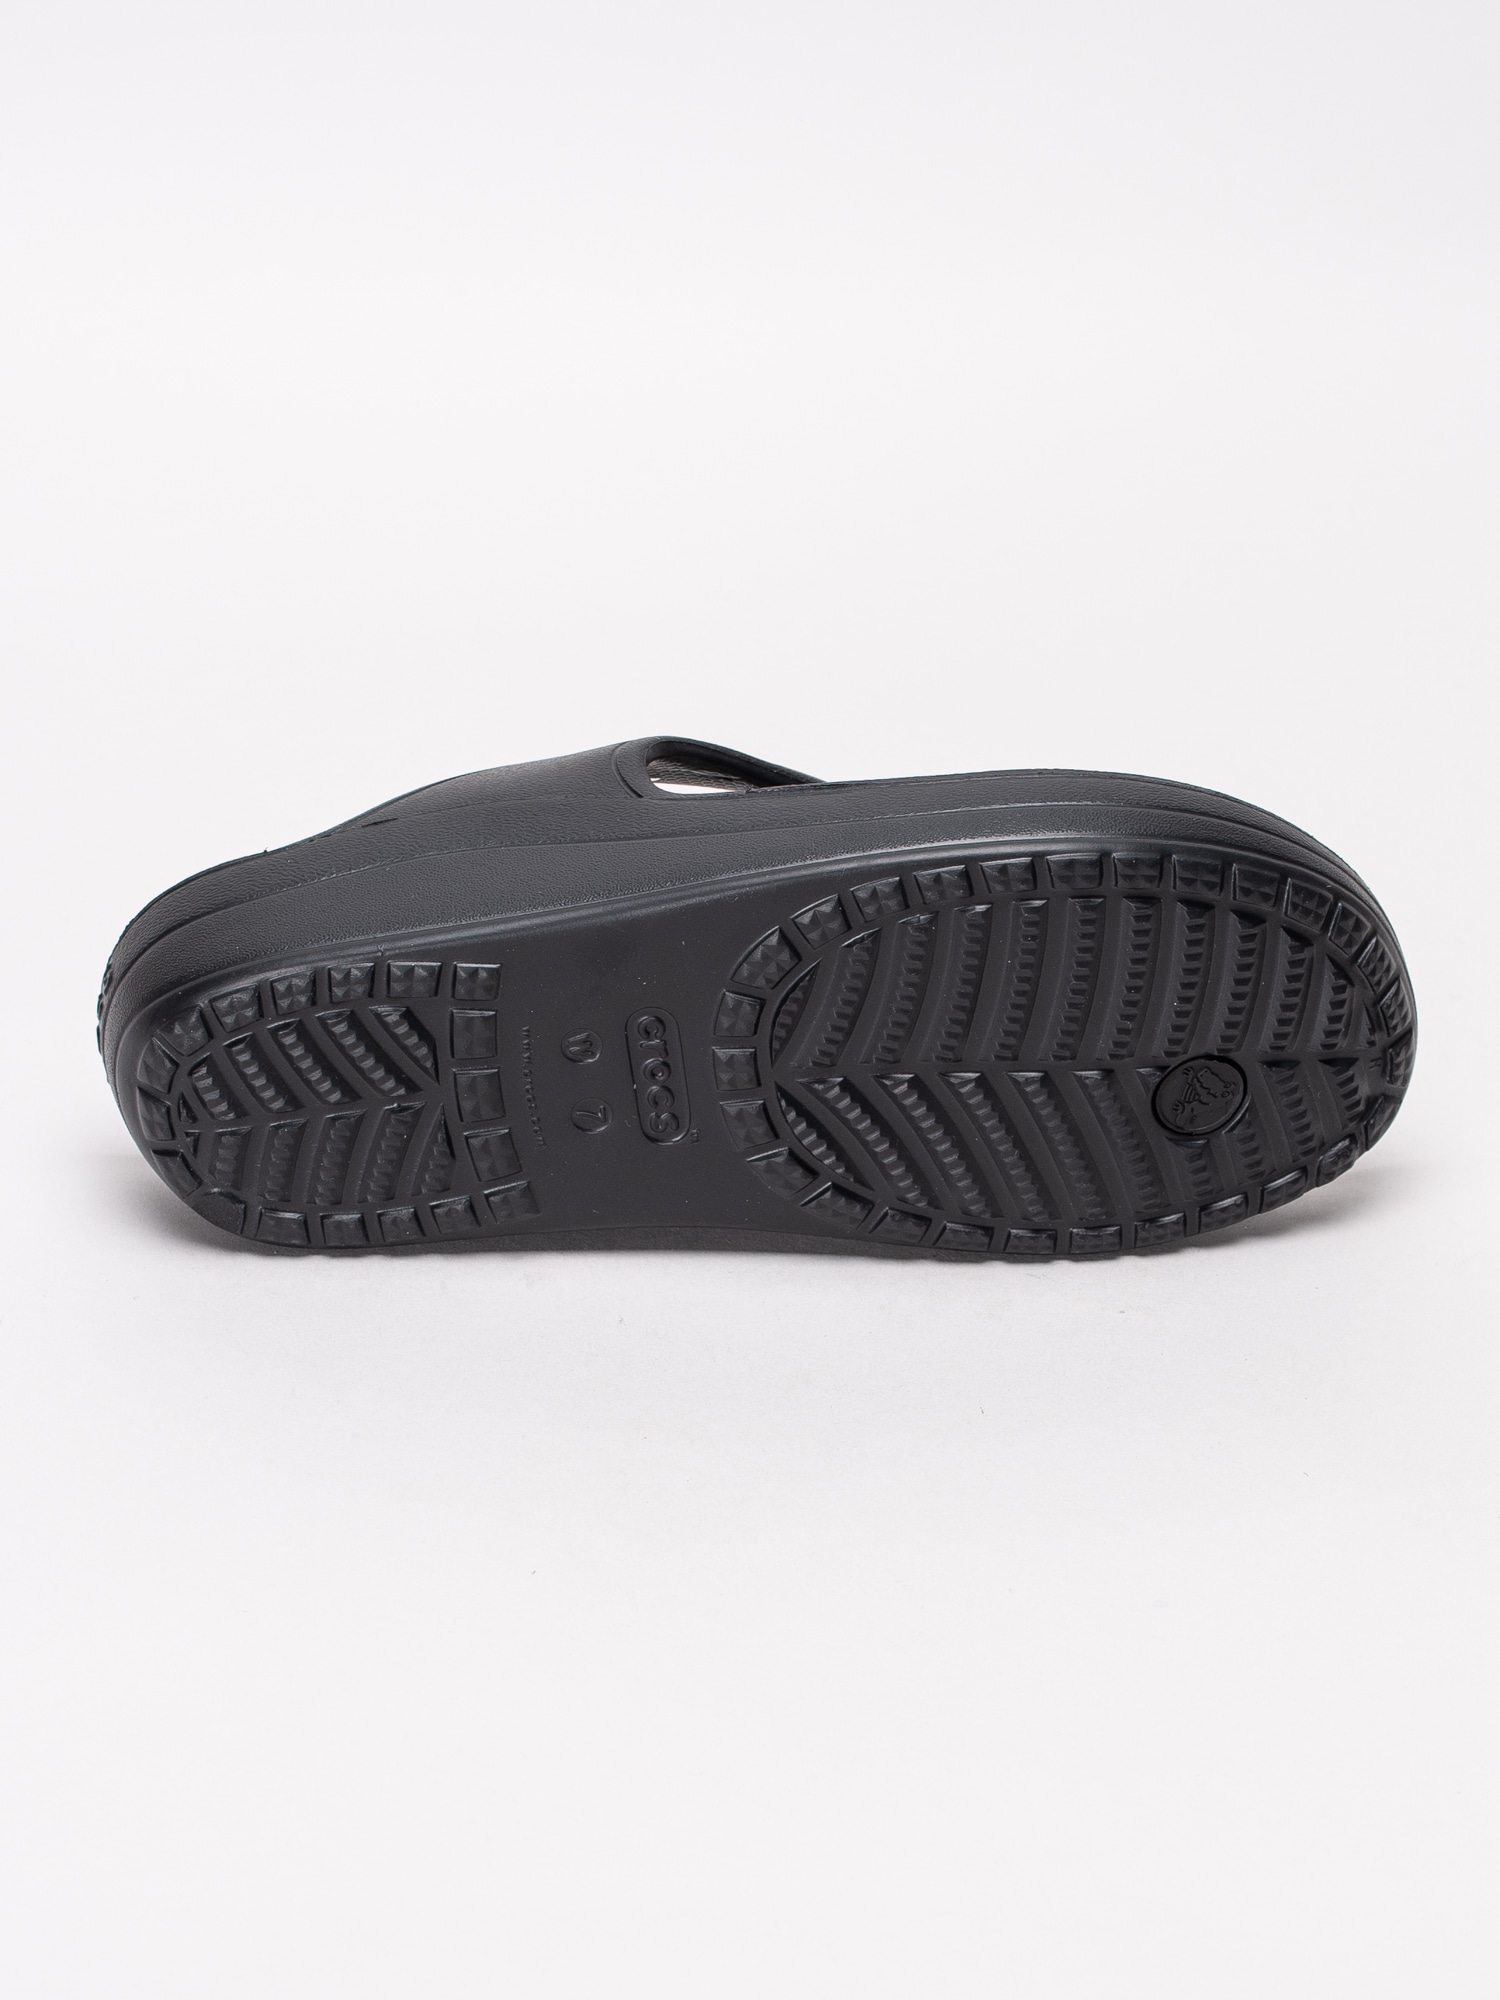 65191019 Crocs Sloane Platform Flip W 200486-001 svarta flipflops sandaler med kilklack-5